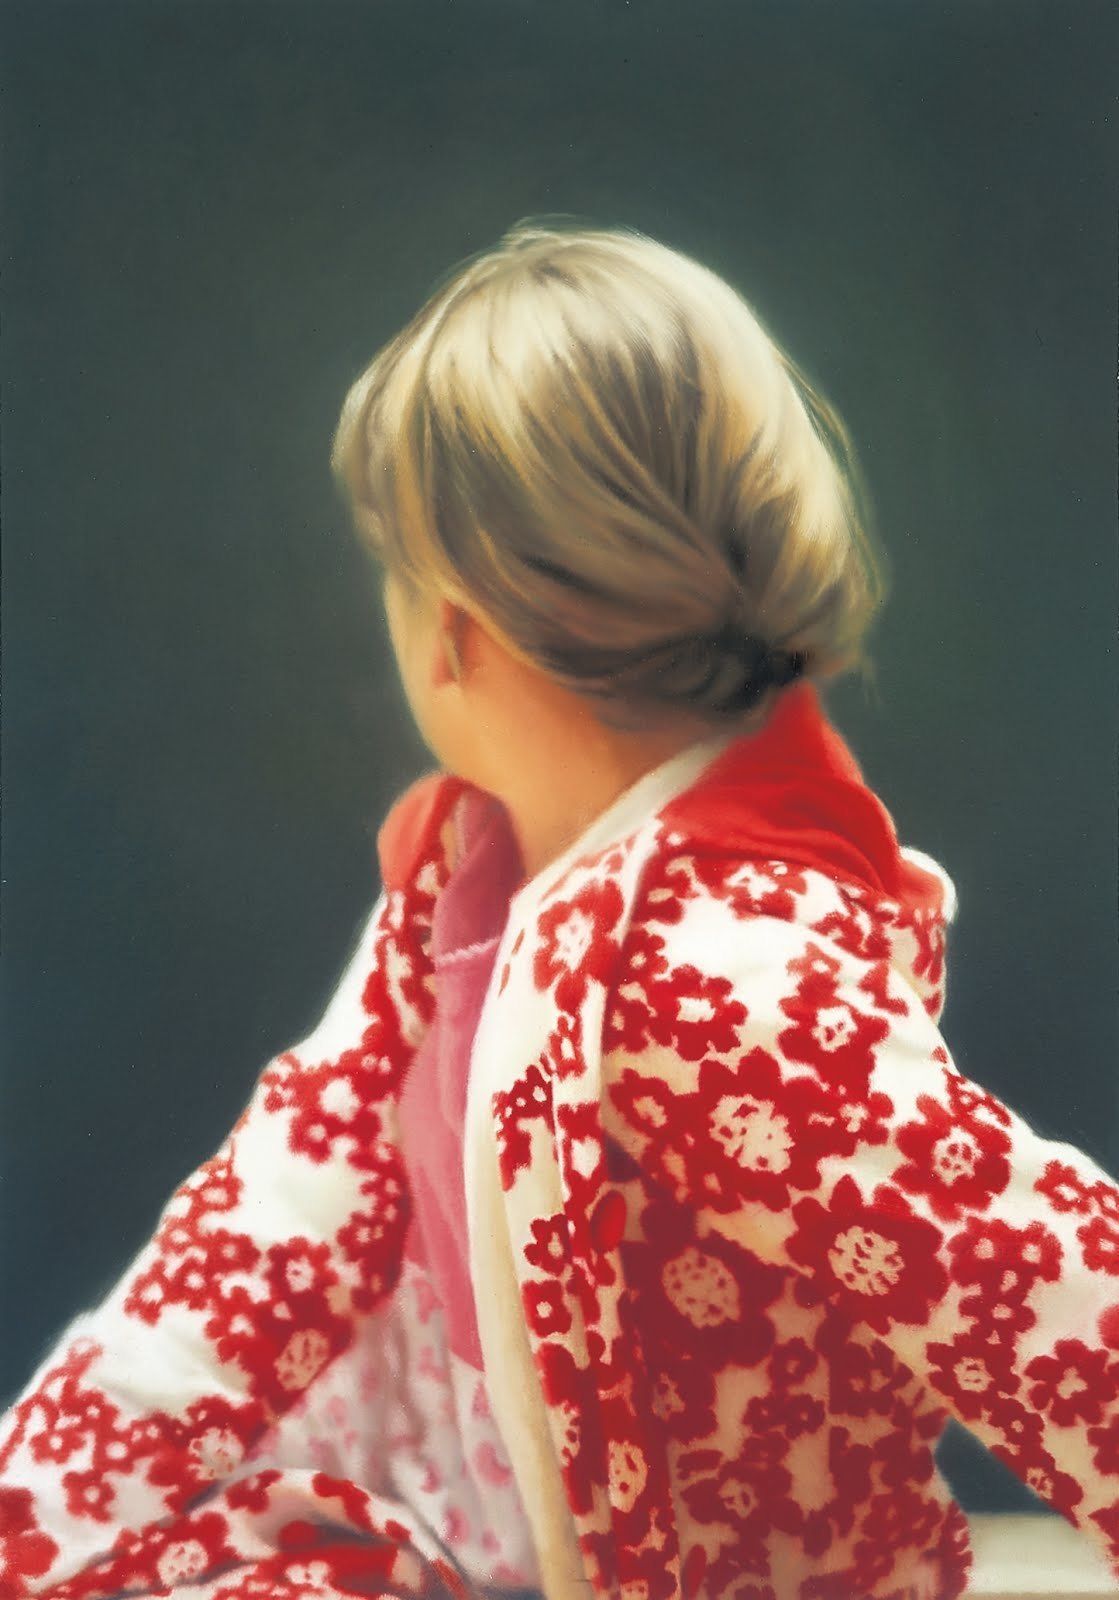 Gerhard Richter  Betty, 1988  Oil on canvas  102 x 72 cm  Courtesy Saint Louis Art Museum, St. Louis, USA